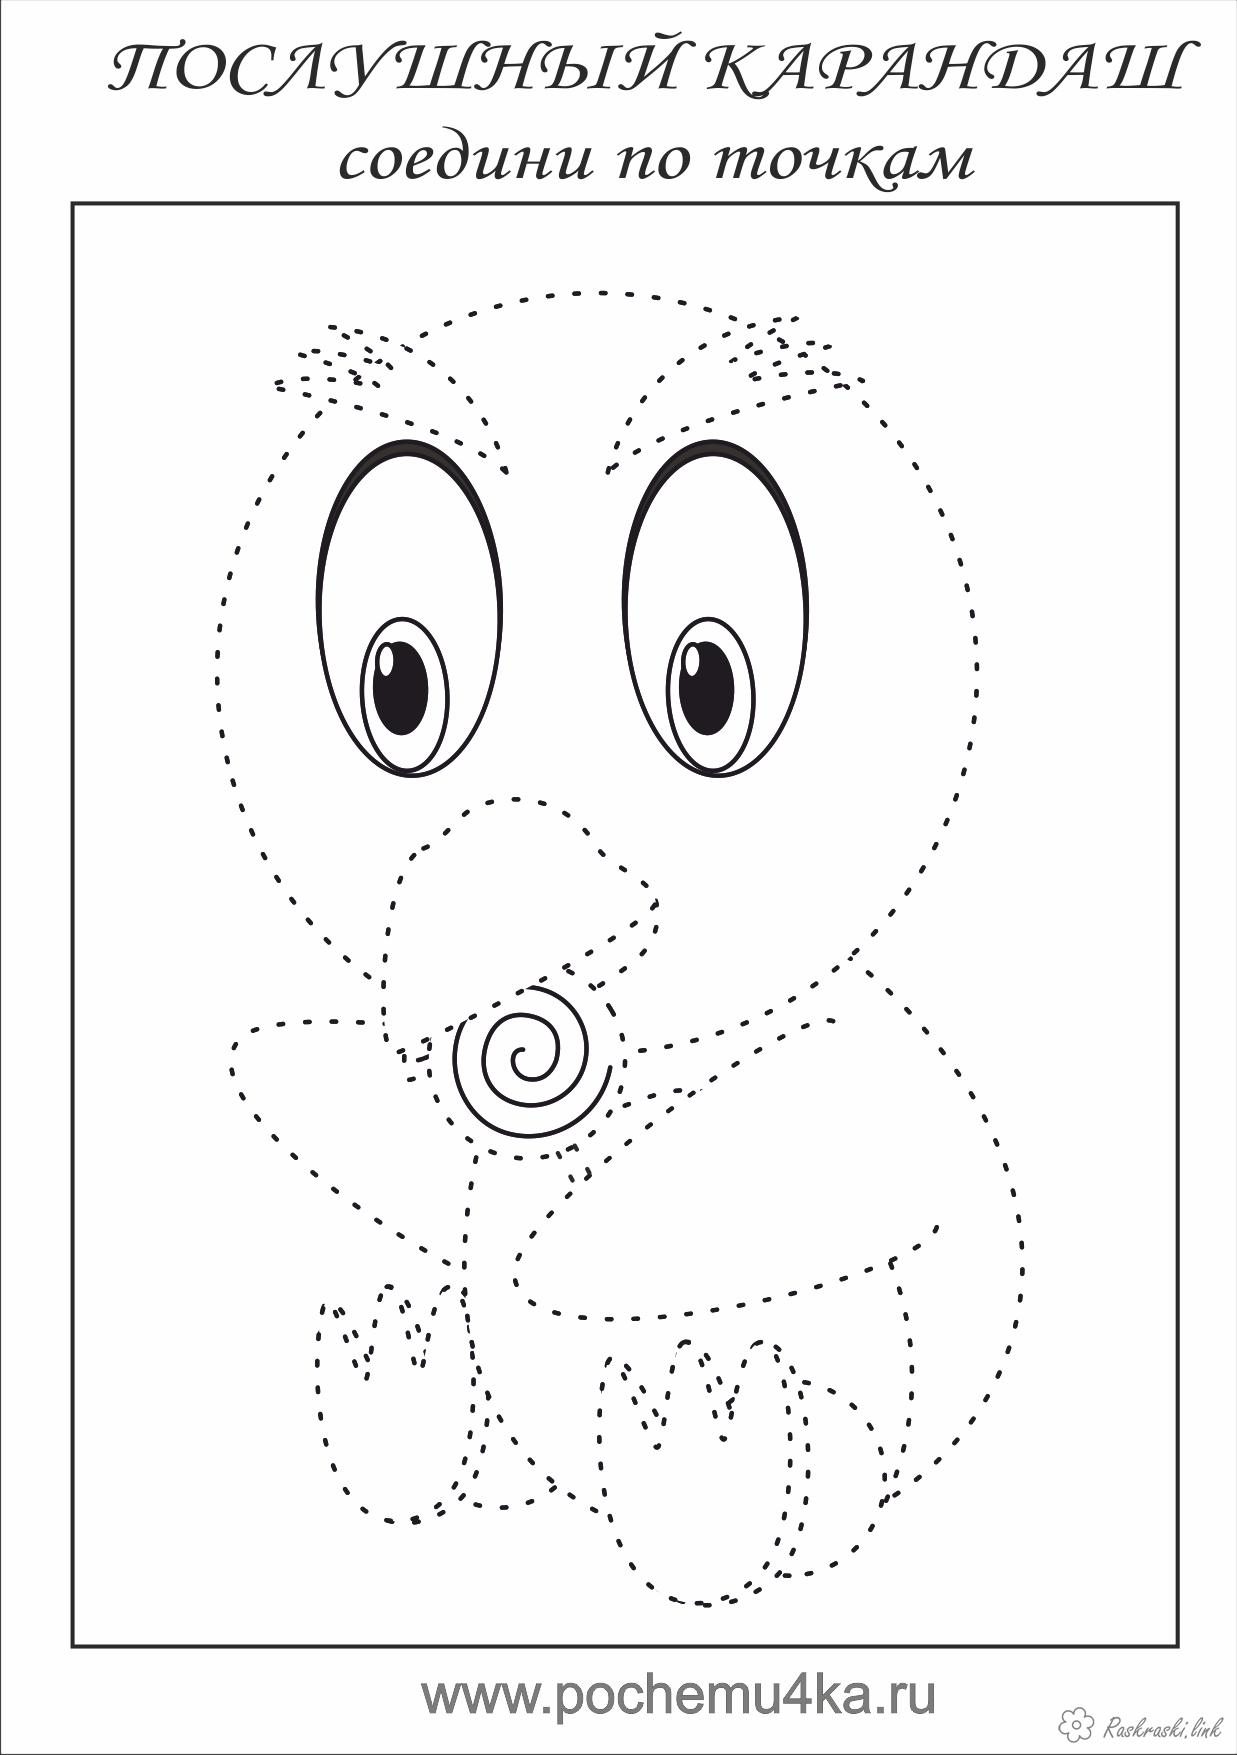 Розмальовки курча Дитяча розфарбування курча, з'єднай і розфарбуй